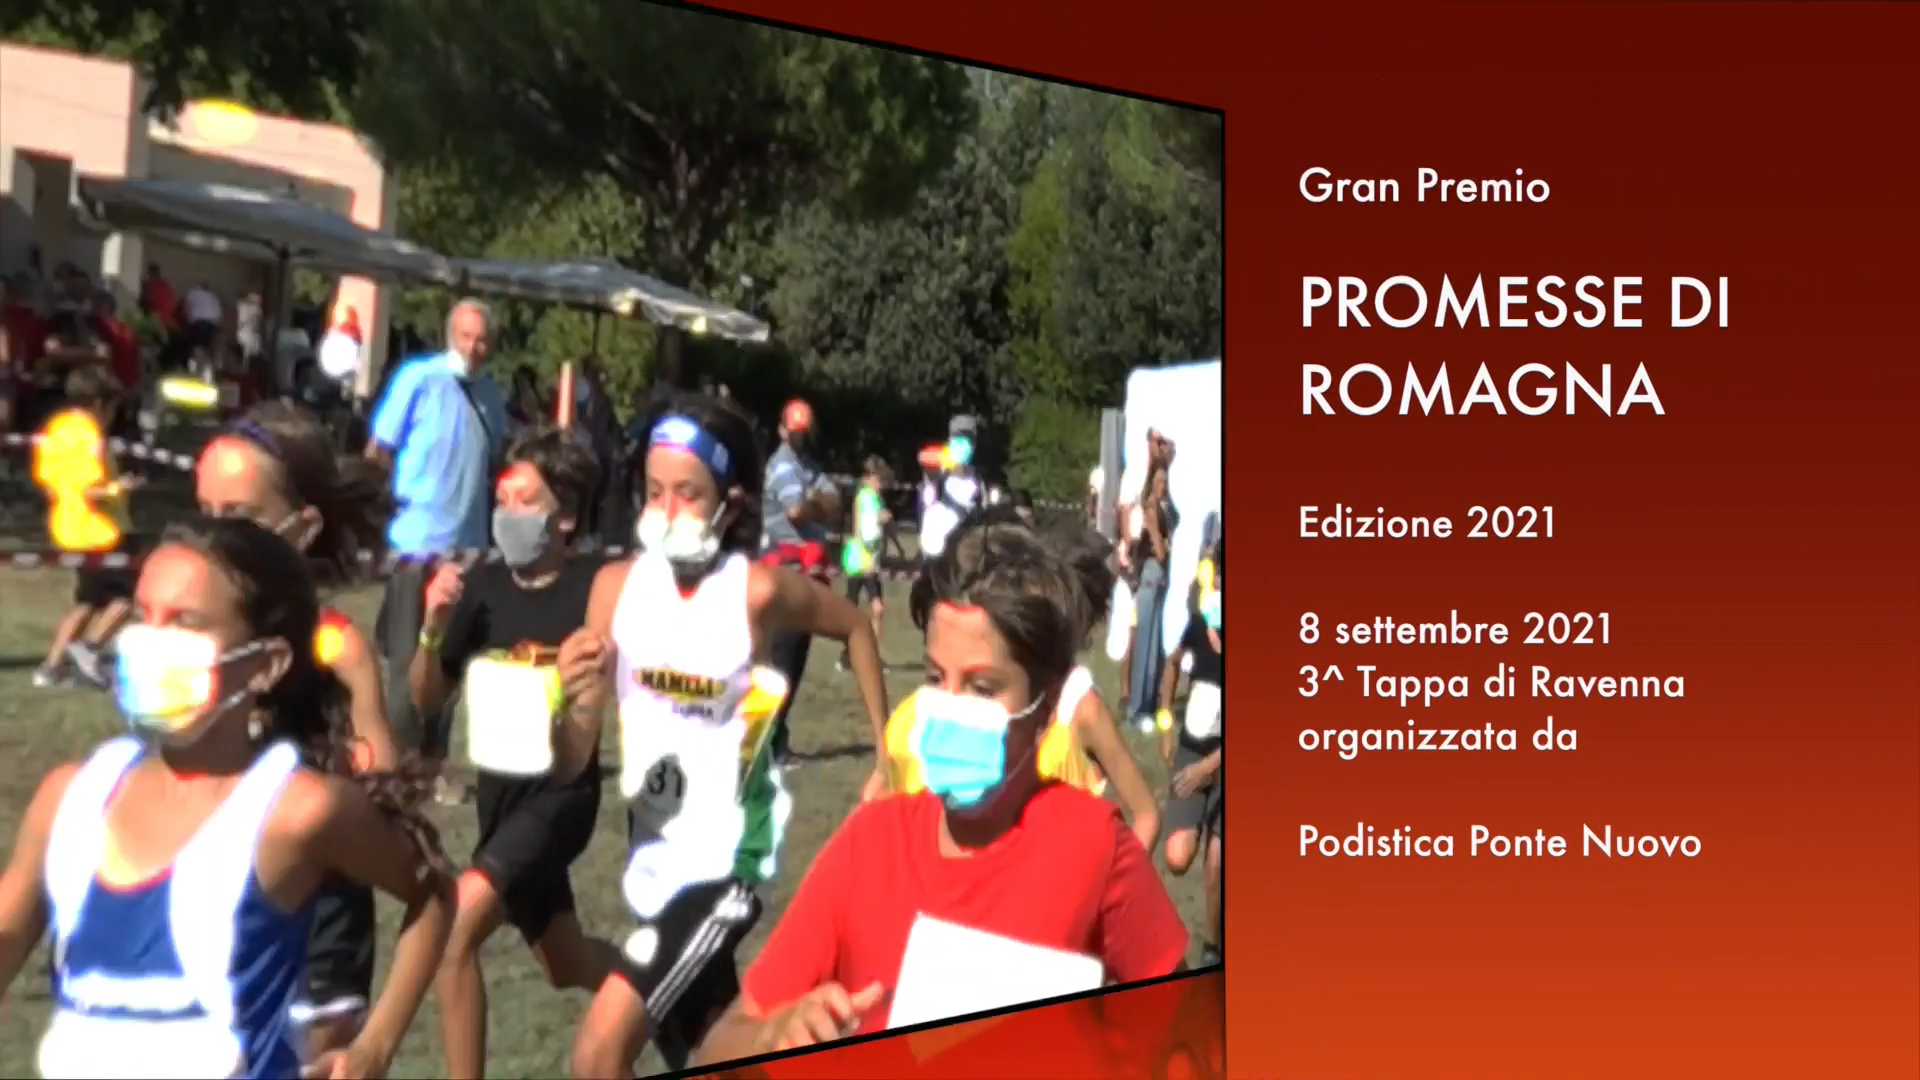 Gran Premio PROMESSE DI ROMAGNA 2021:  3a Tappa organizzata da PODISTICA PONTE NUOVO